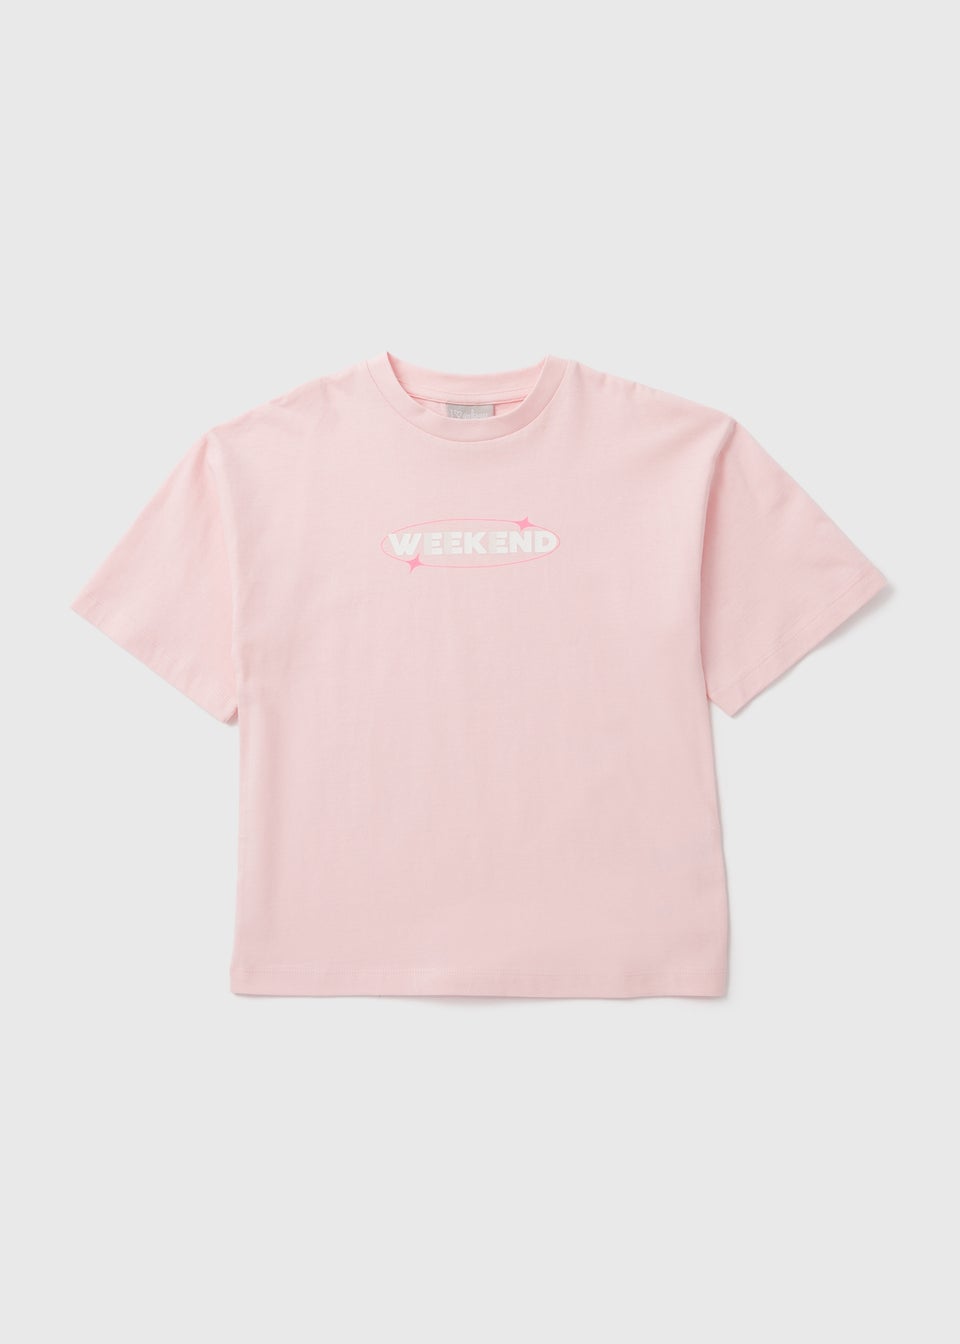 Girls Pink Weekend Slogan T-Shirt (7-15yrs)